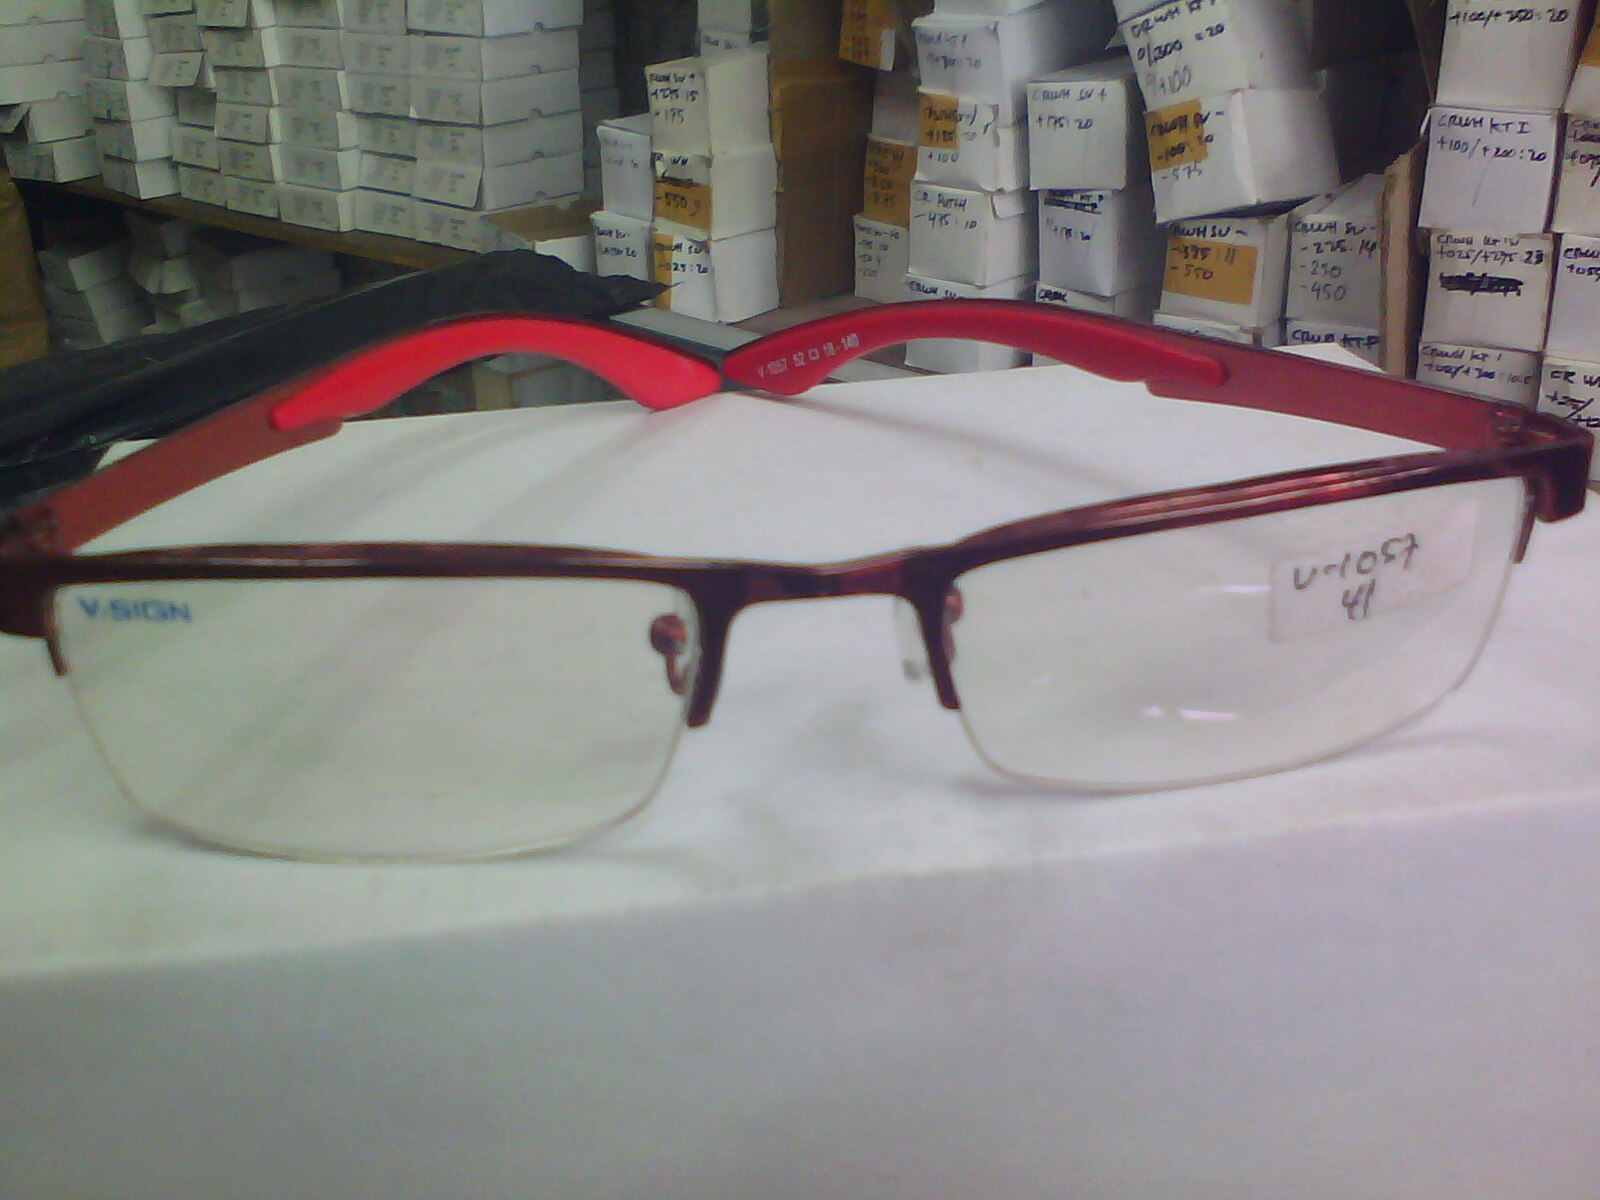  kacamata  minus  pusat kacamata minus murah  grosir kacamata  